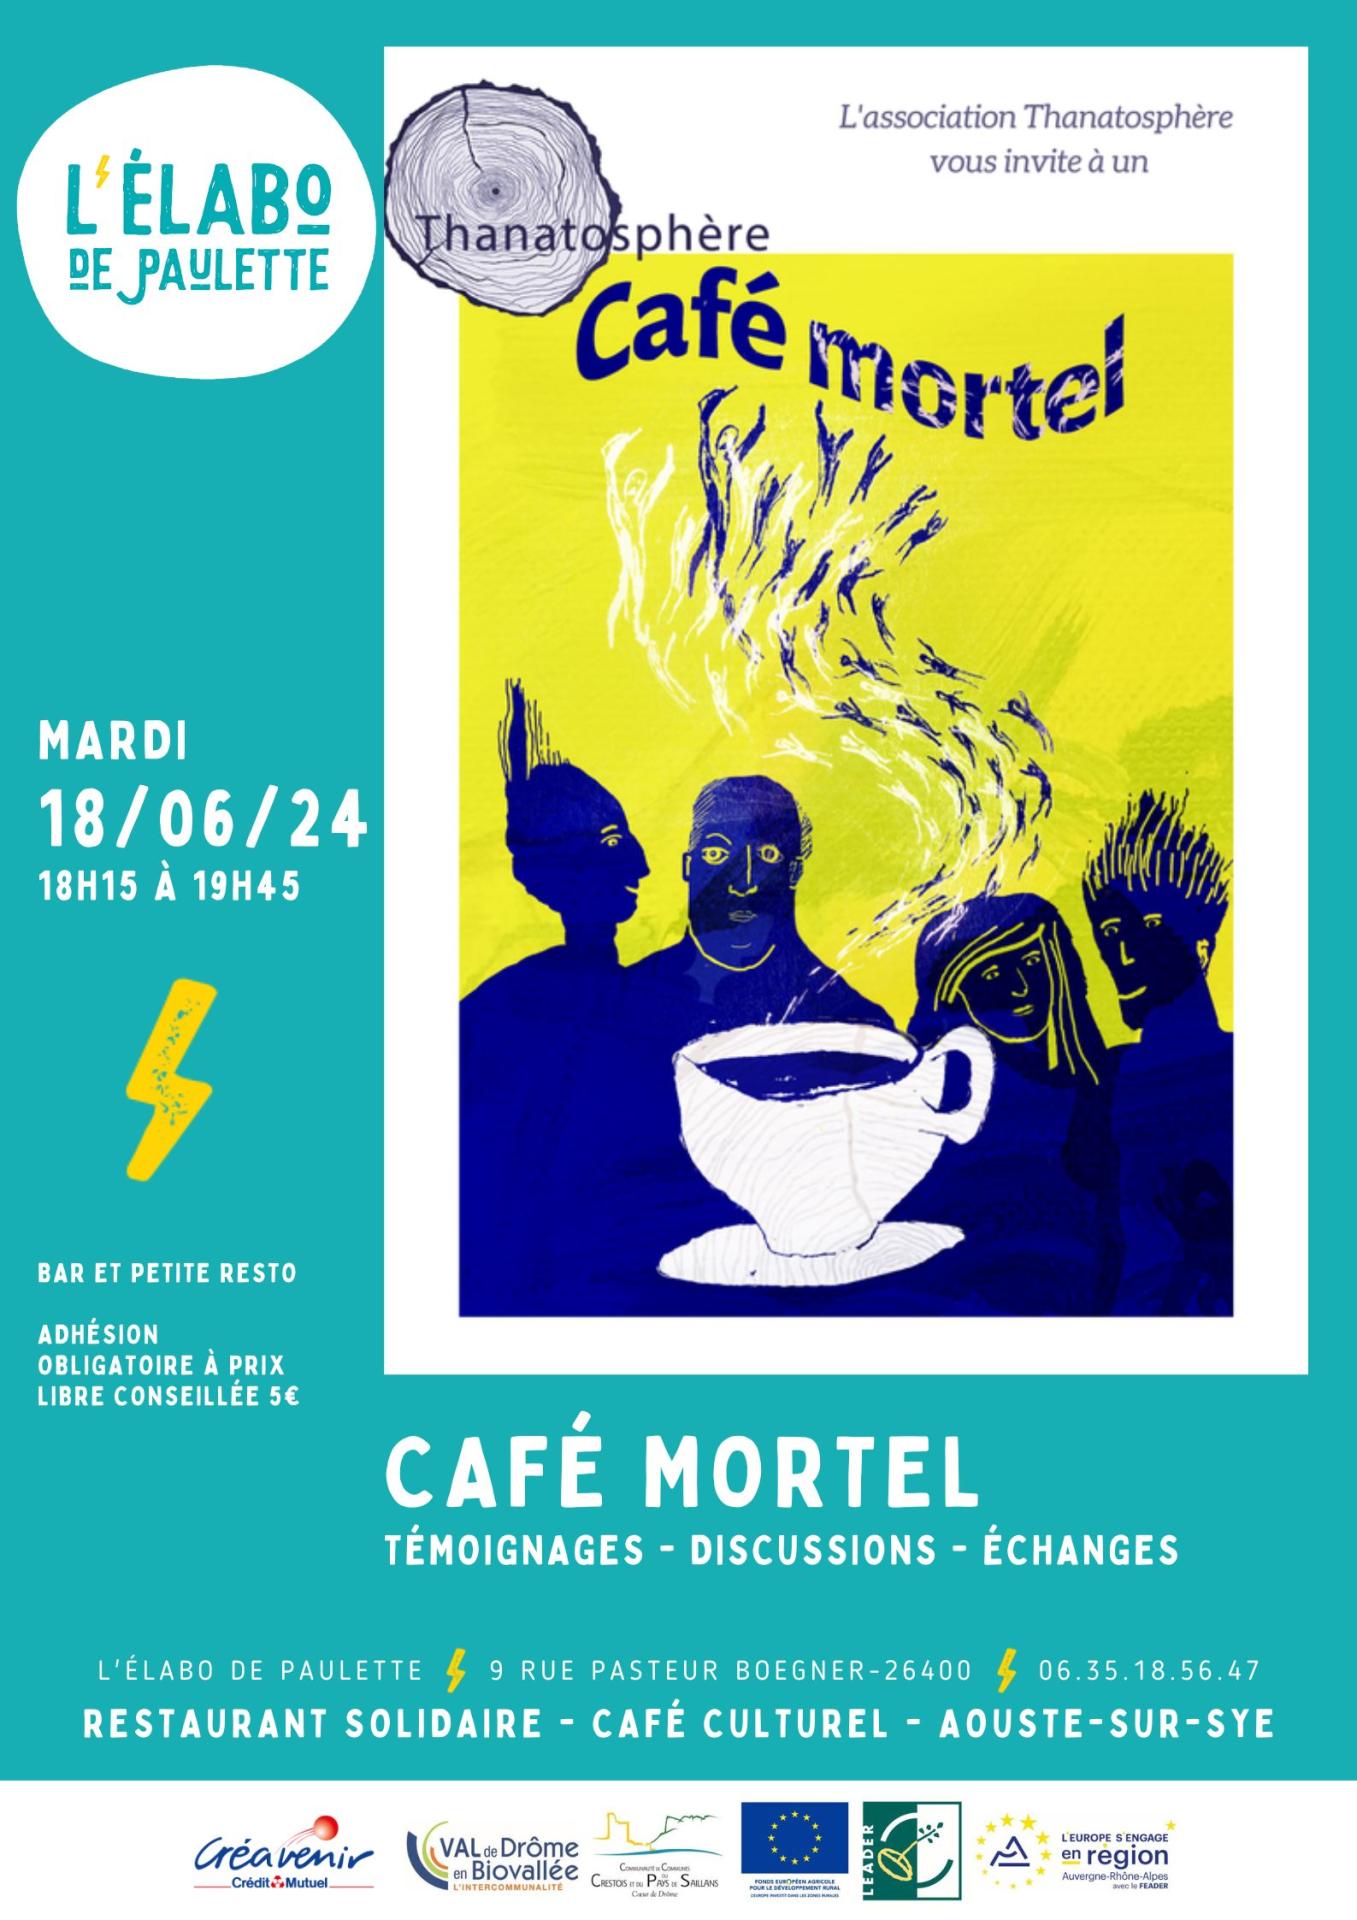 Cafe mortel 0